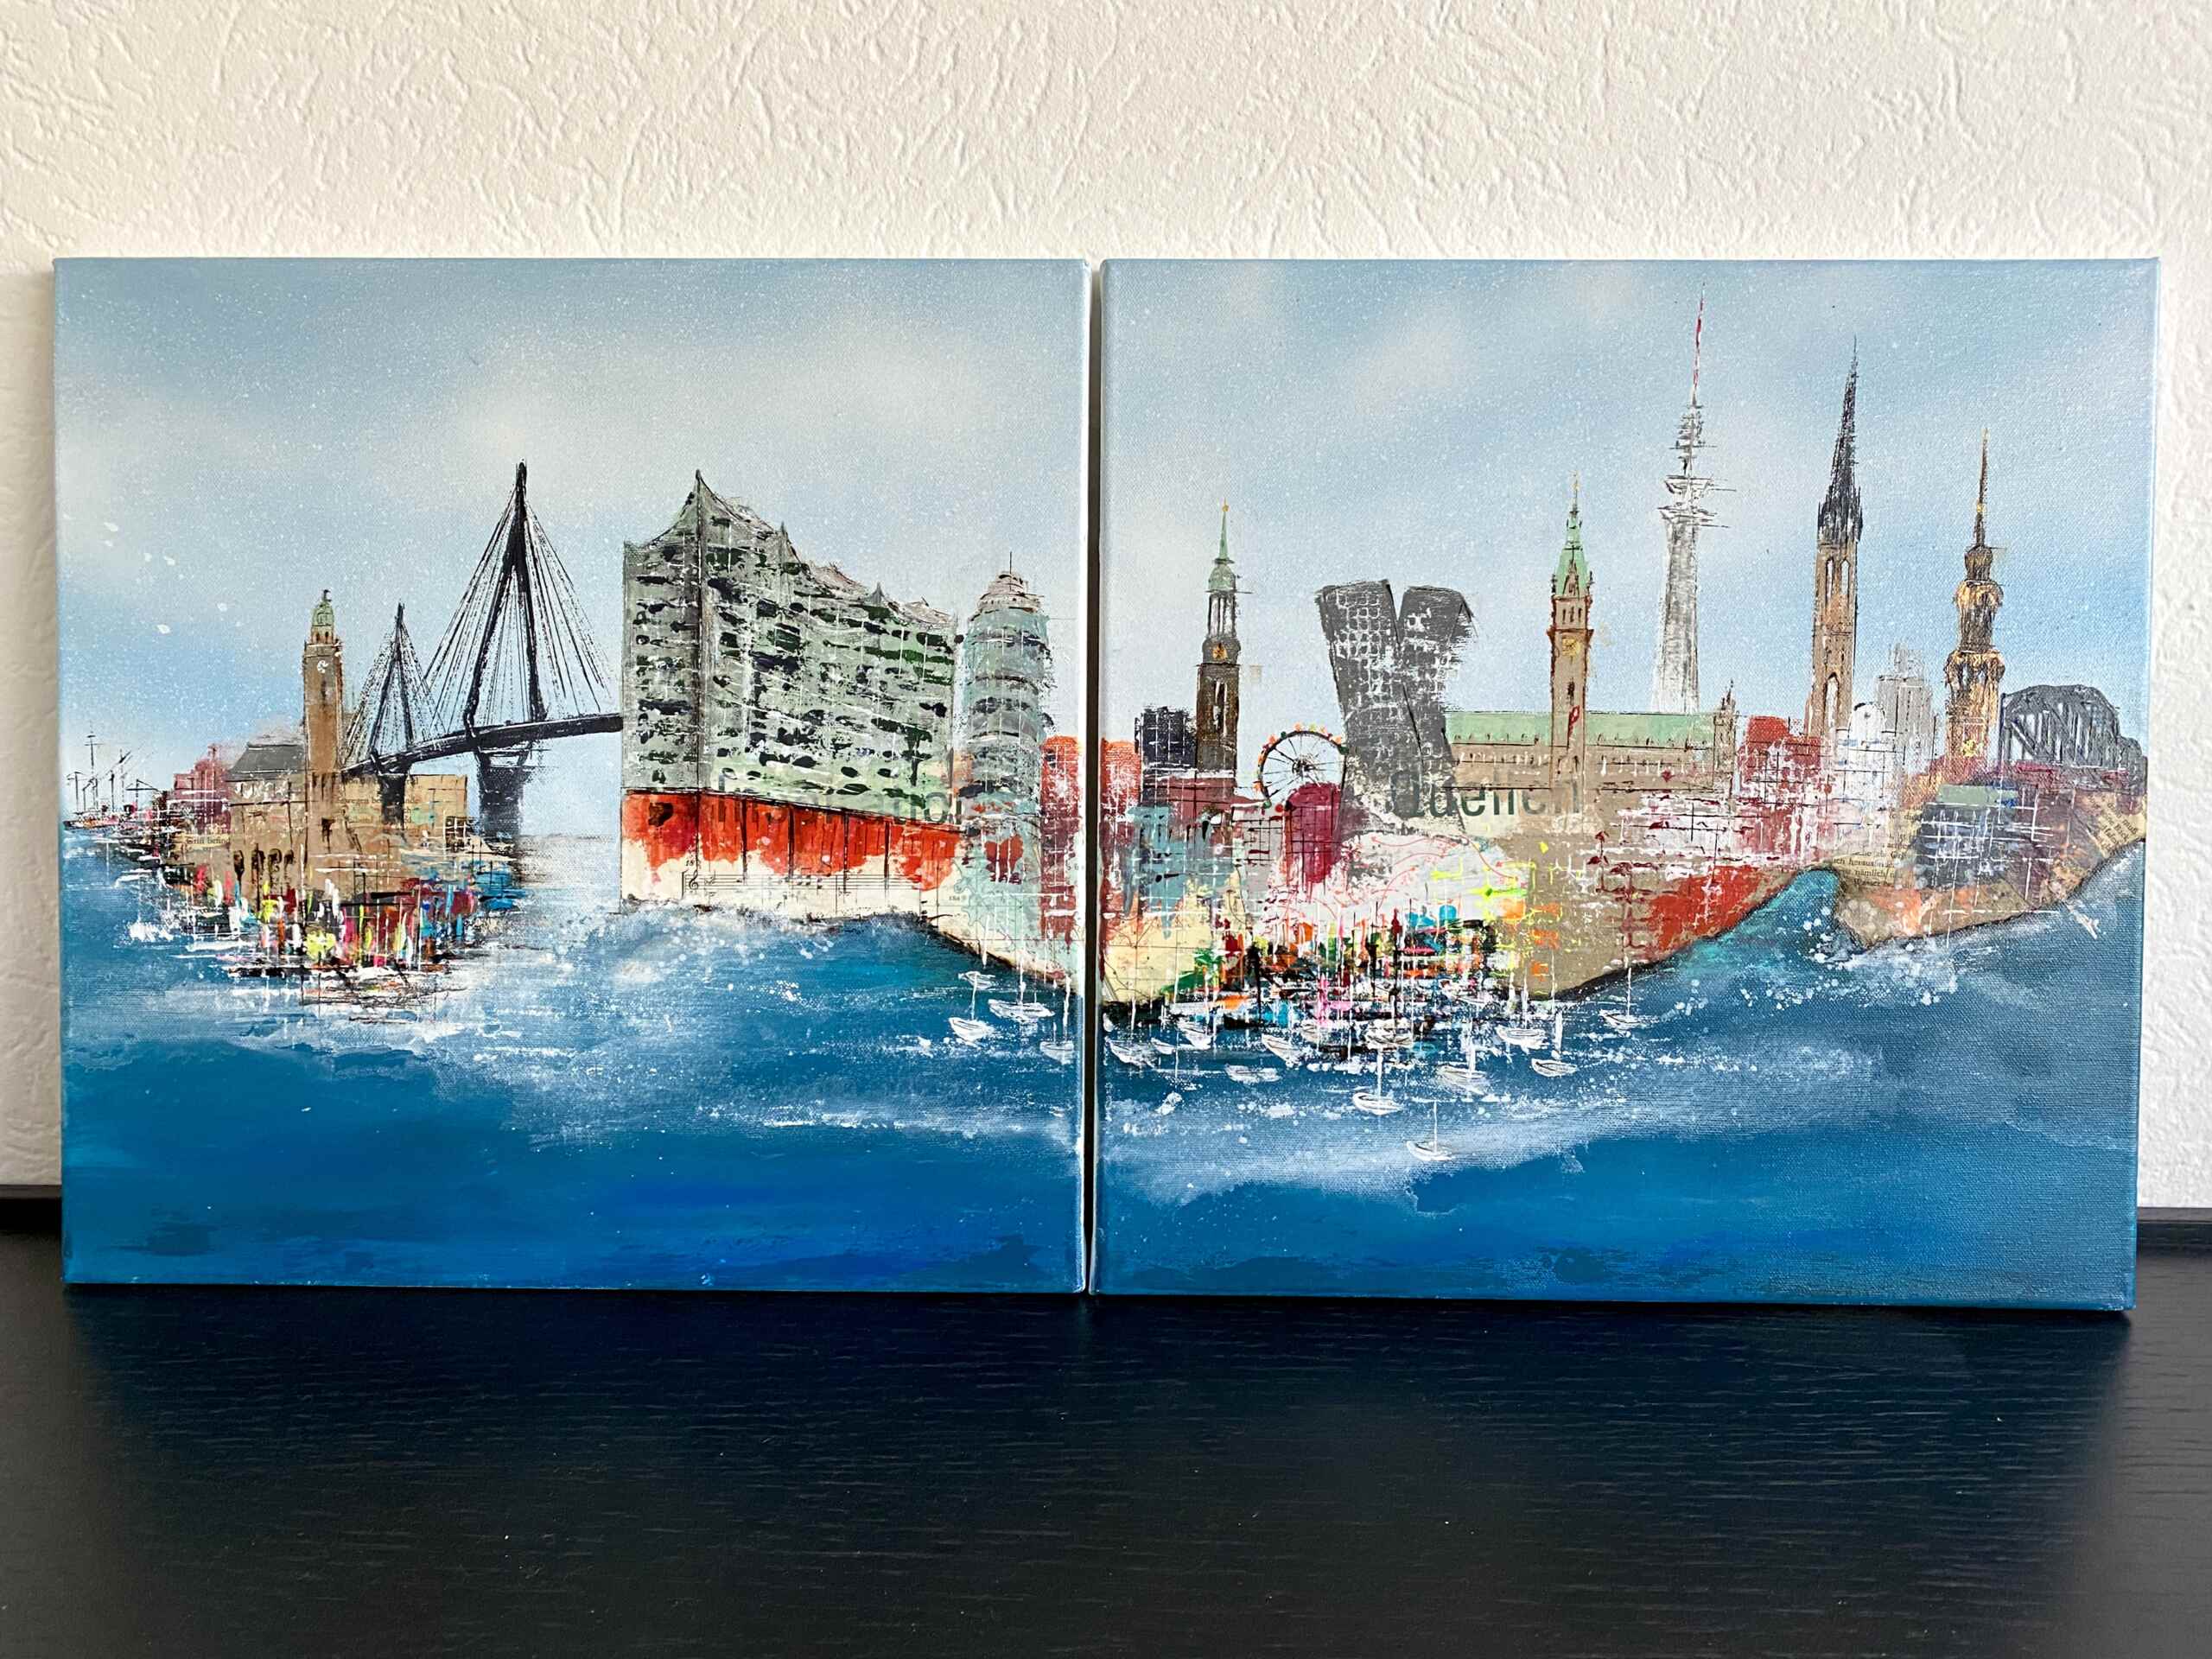 Artworks “Inspiring Hamburg No 1 and No 2” by Nina Groth